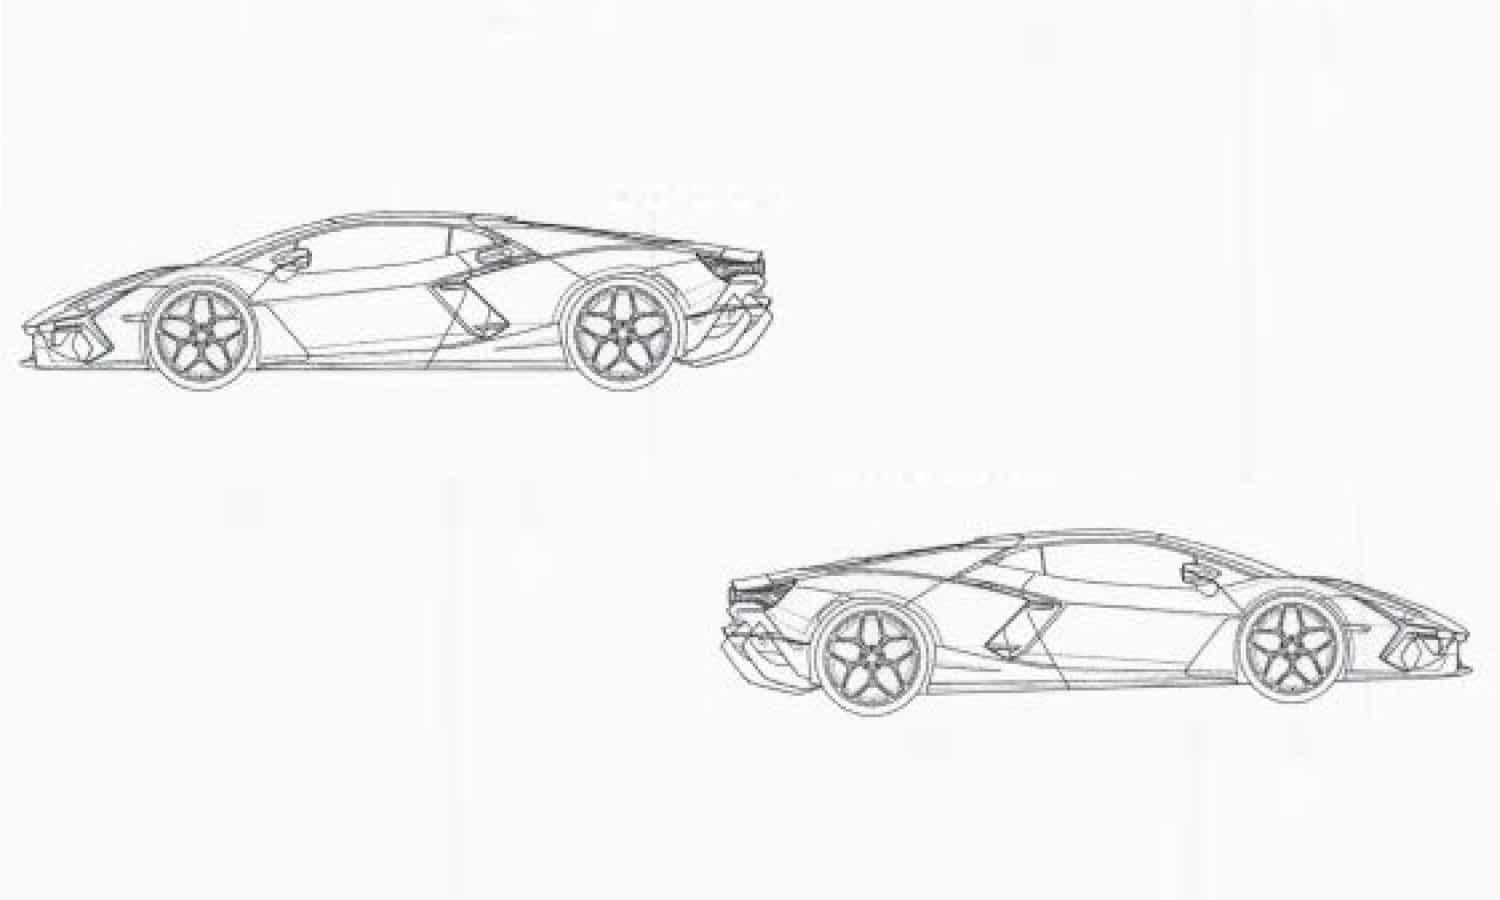 Lamborghini Aventador replacement patent images